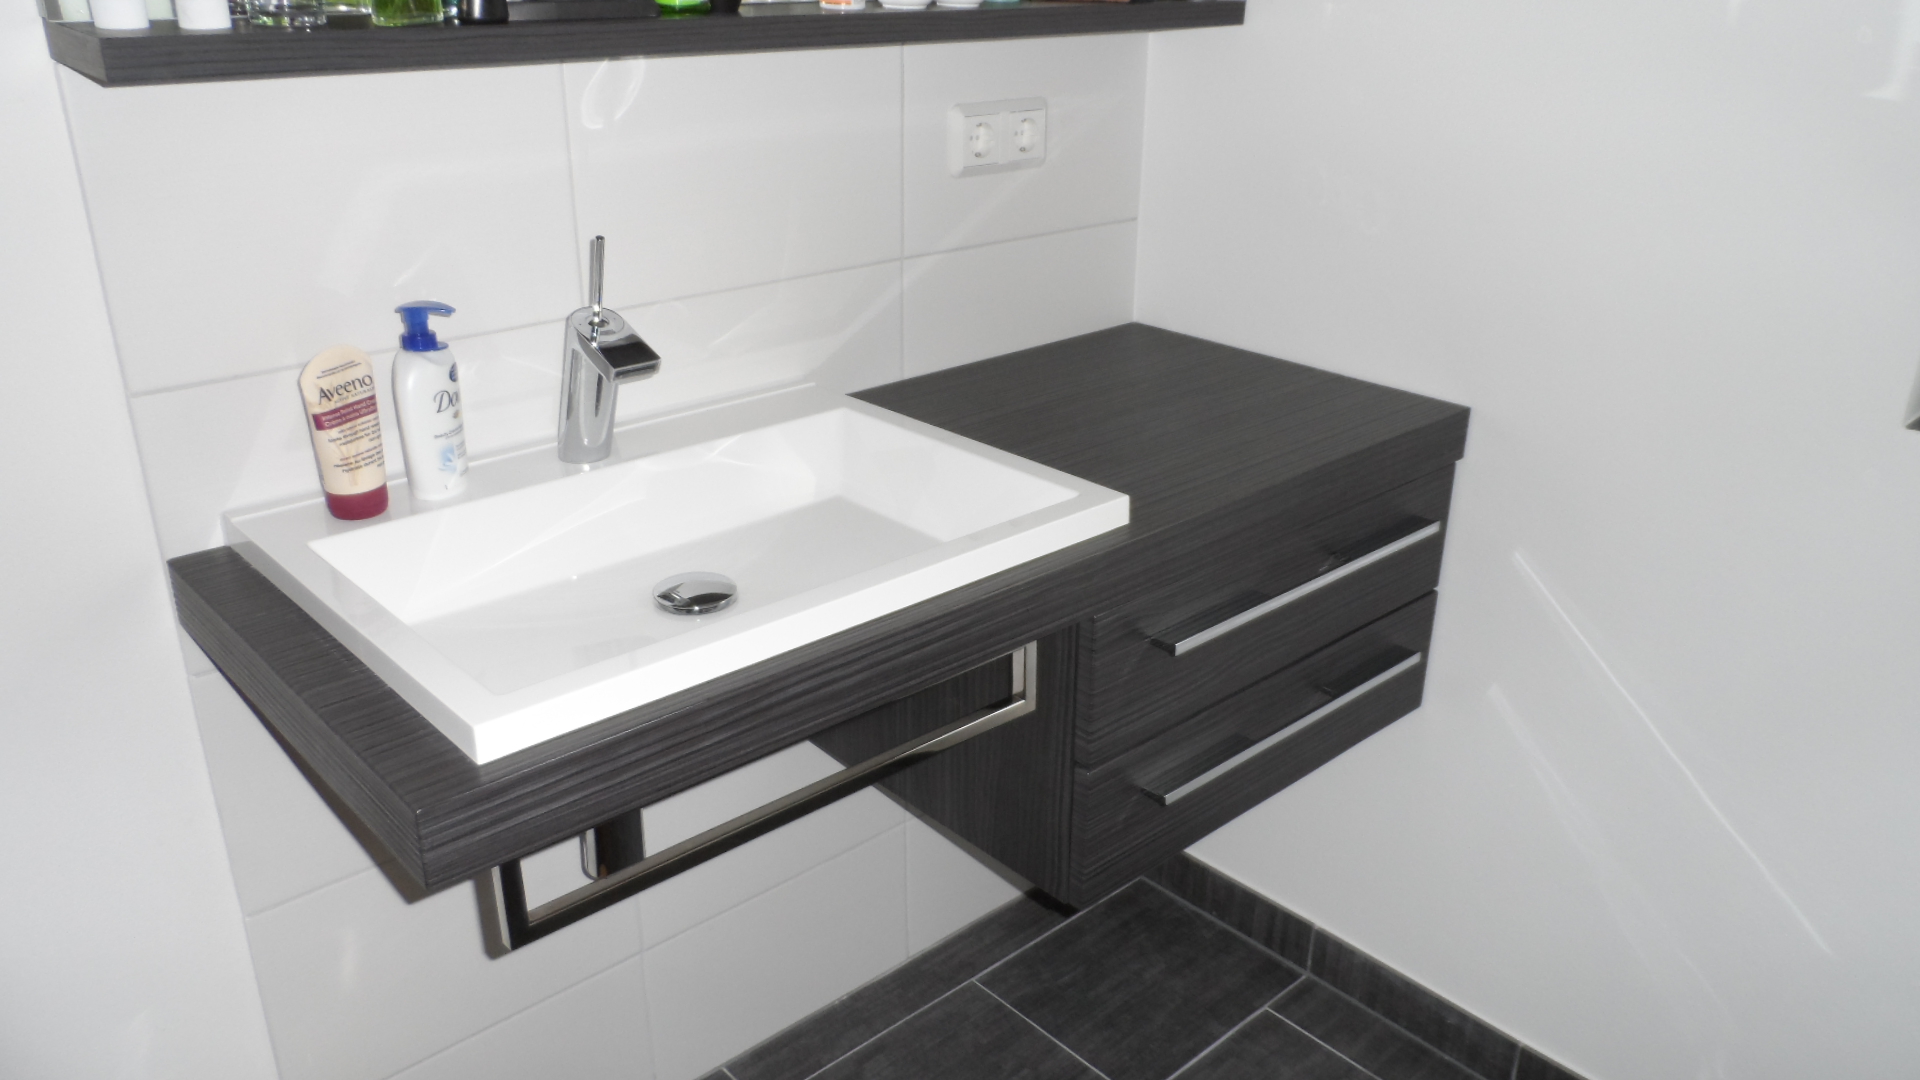 Gerd Nolte Heizung & Sanitär – Modernes Badezimmer in schwarz weiß